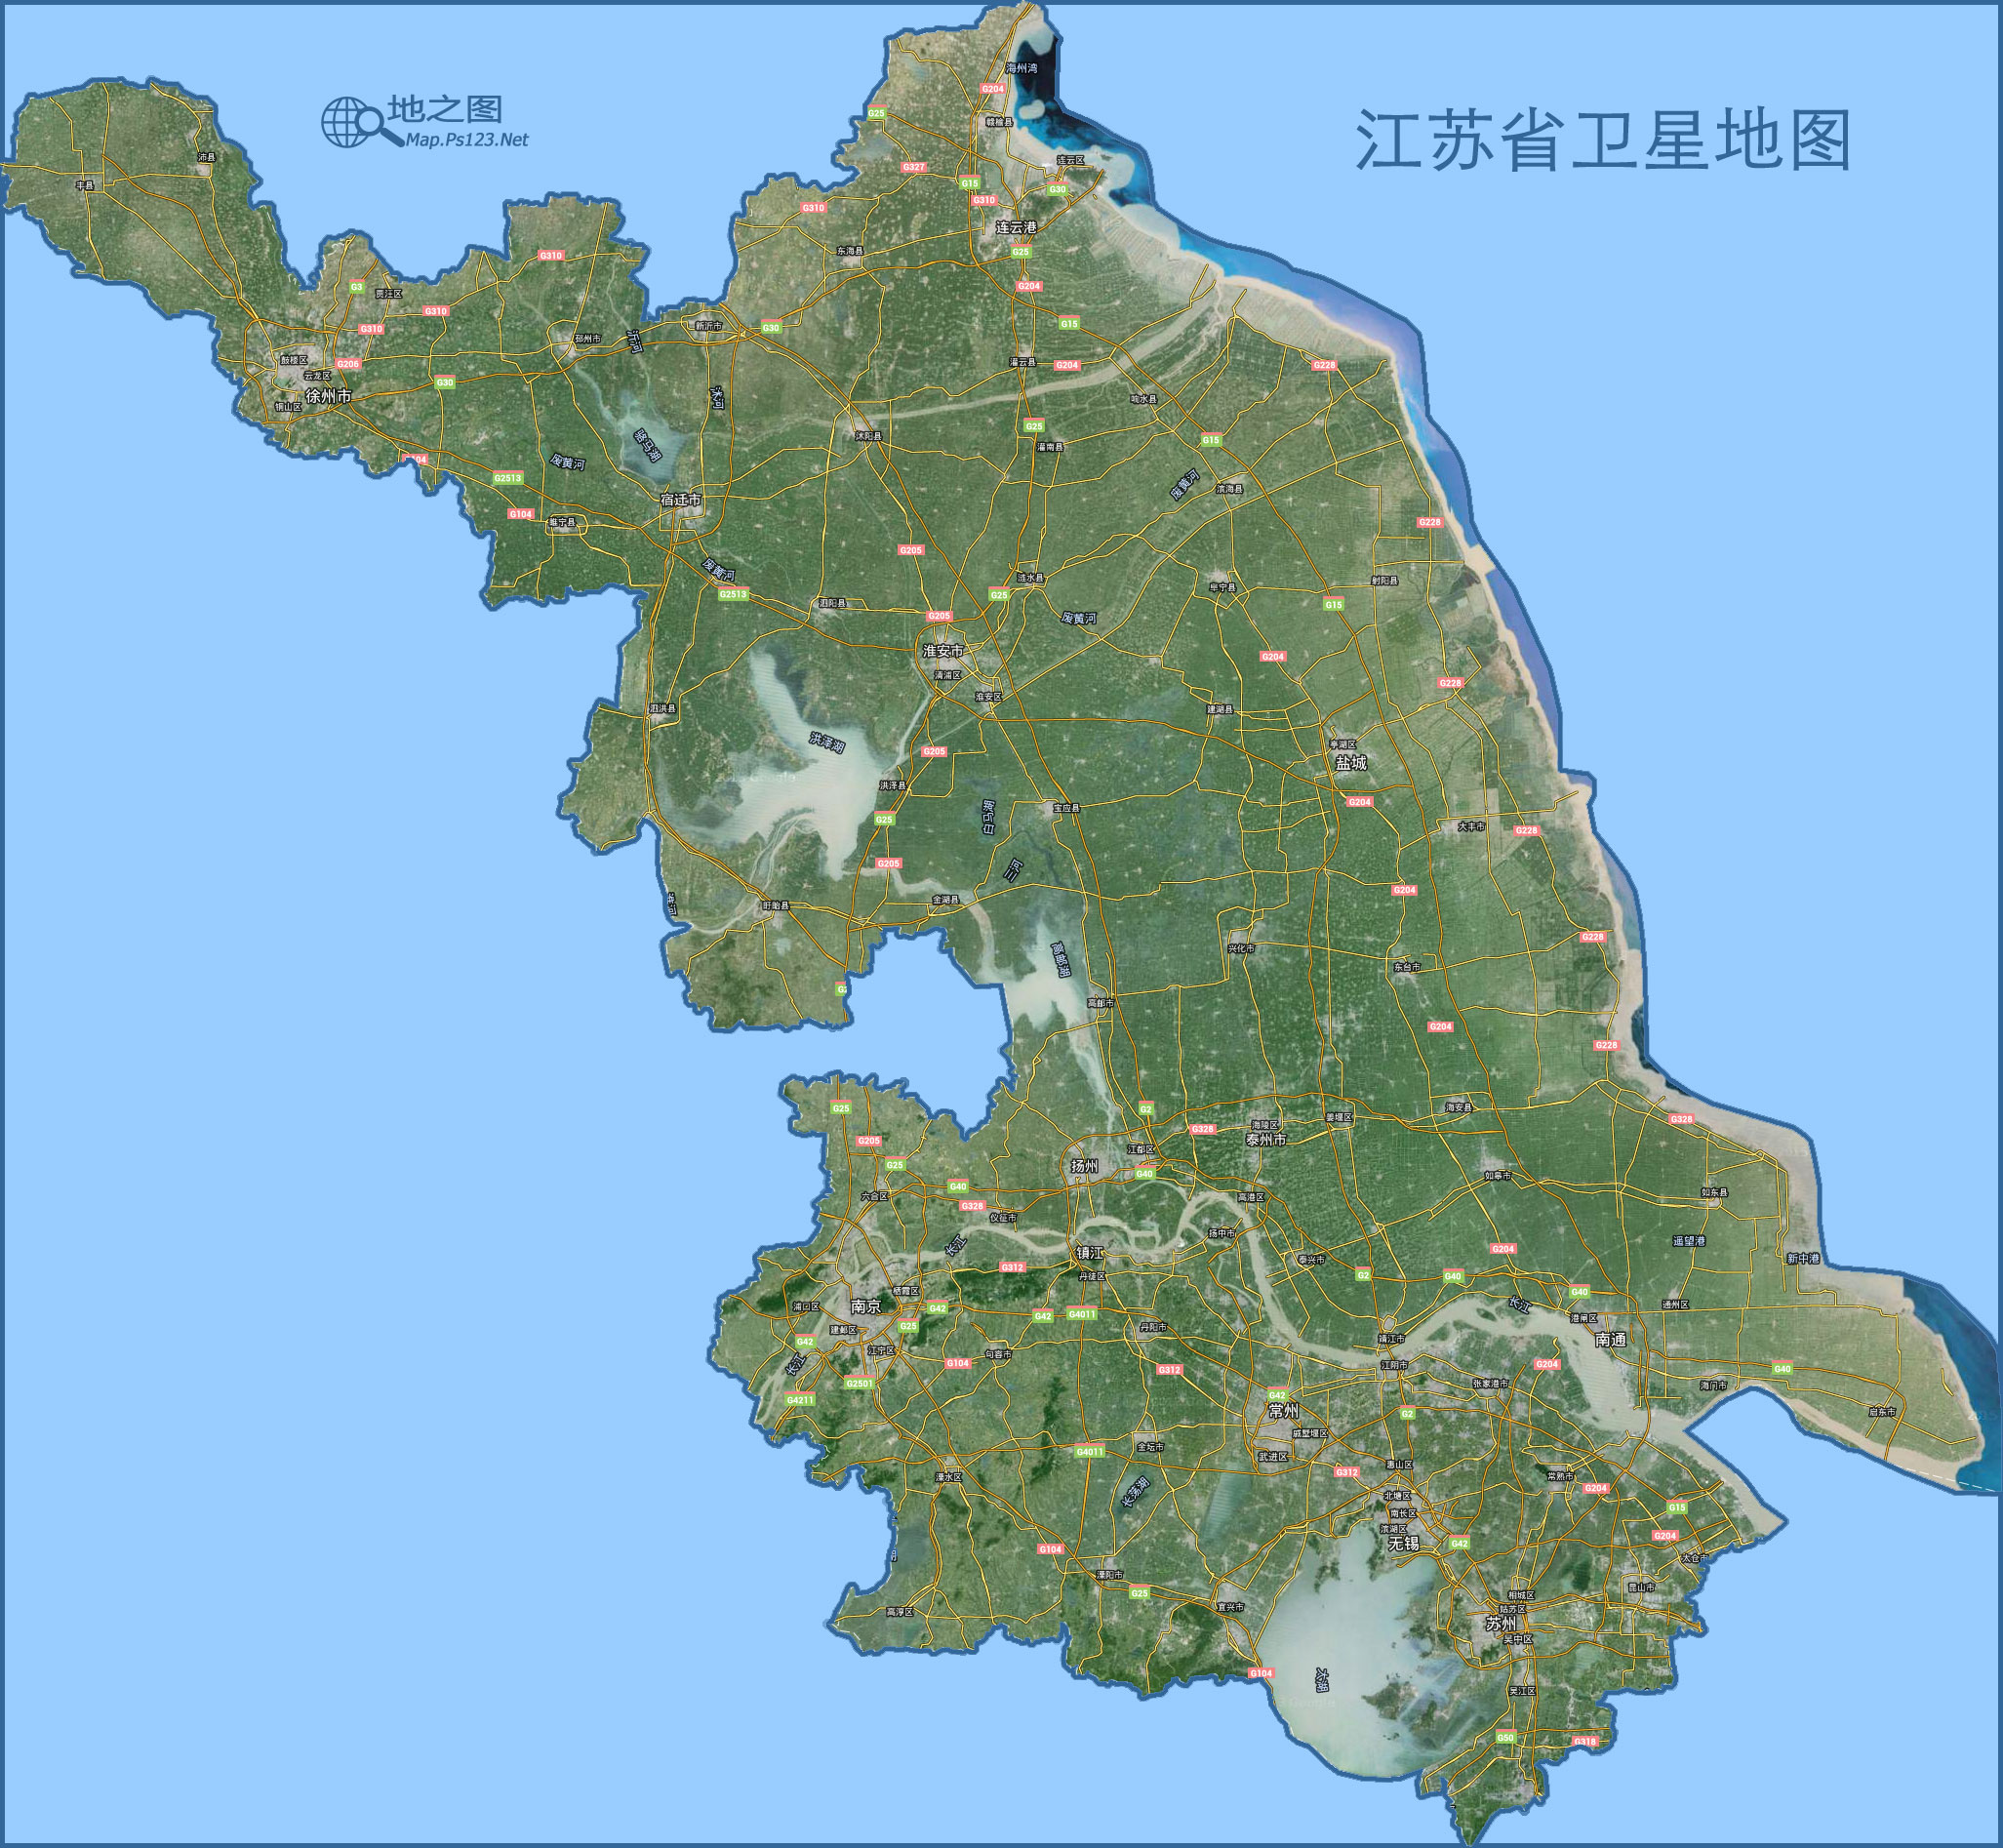 中国地图 江苏 >> 江苏地图(卫星图)  分类: 江苏  更新:2015-8-13图片